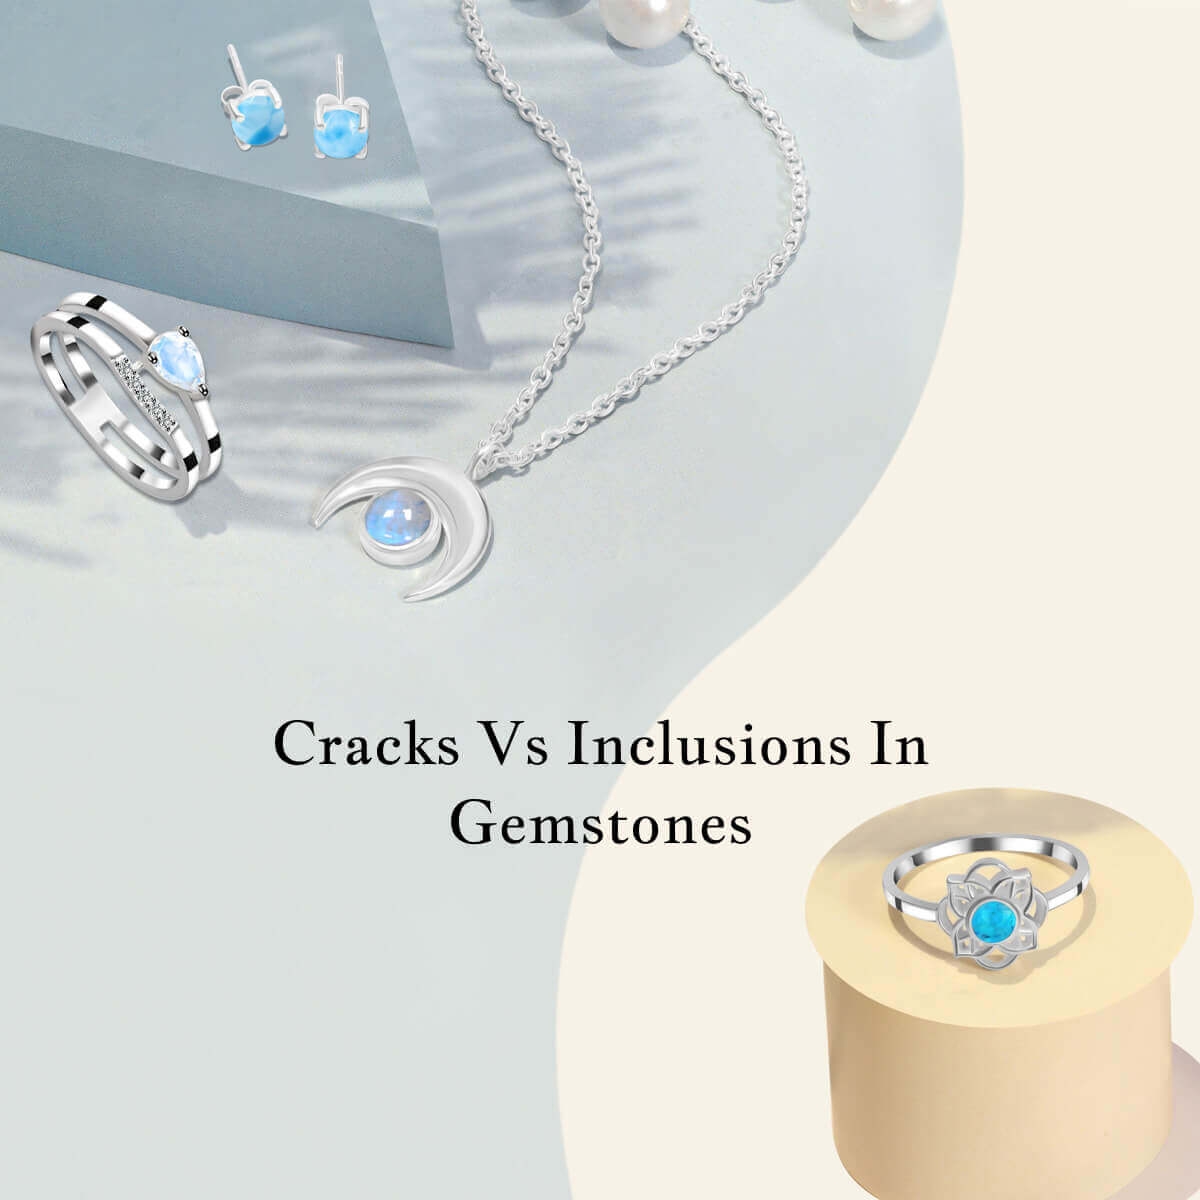 Cracks Vs Inclusions